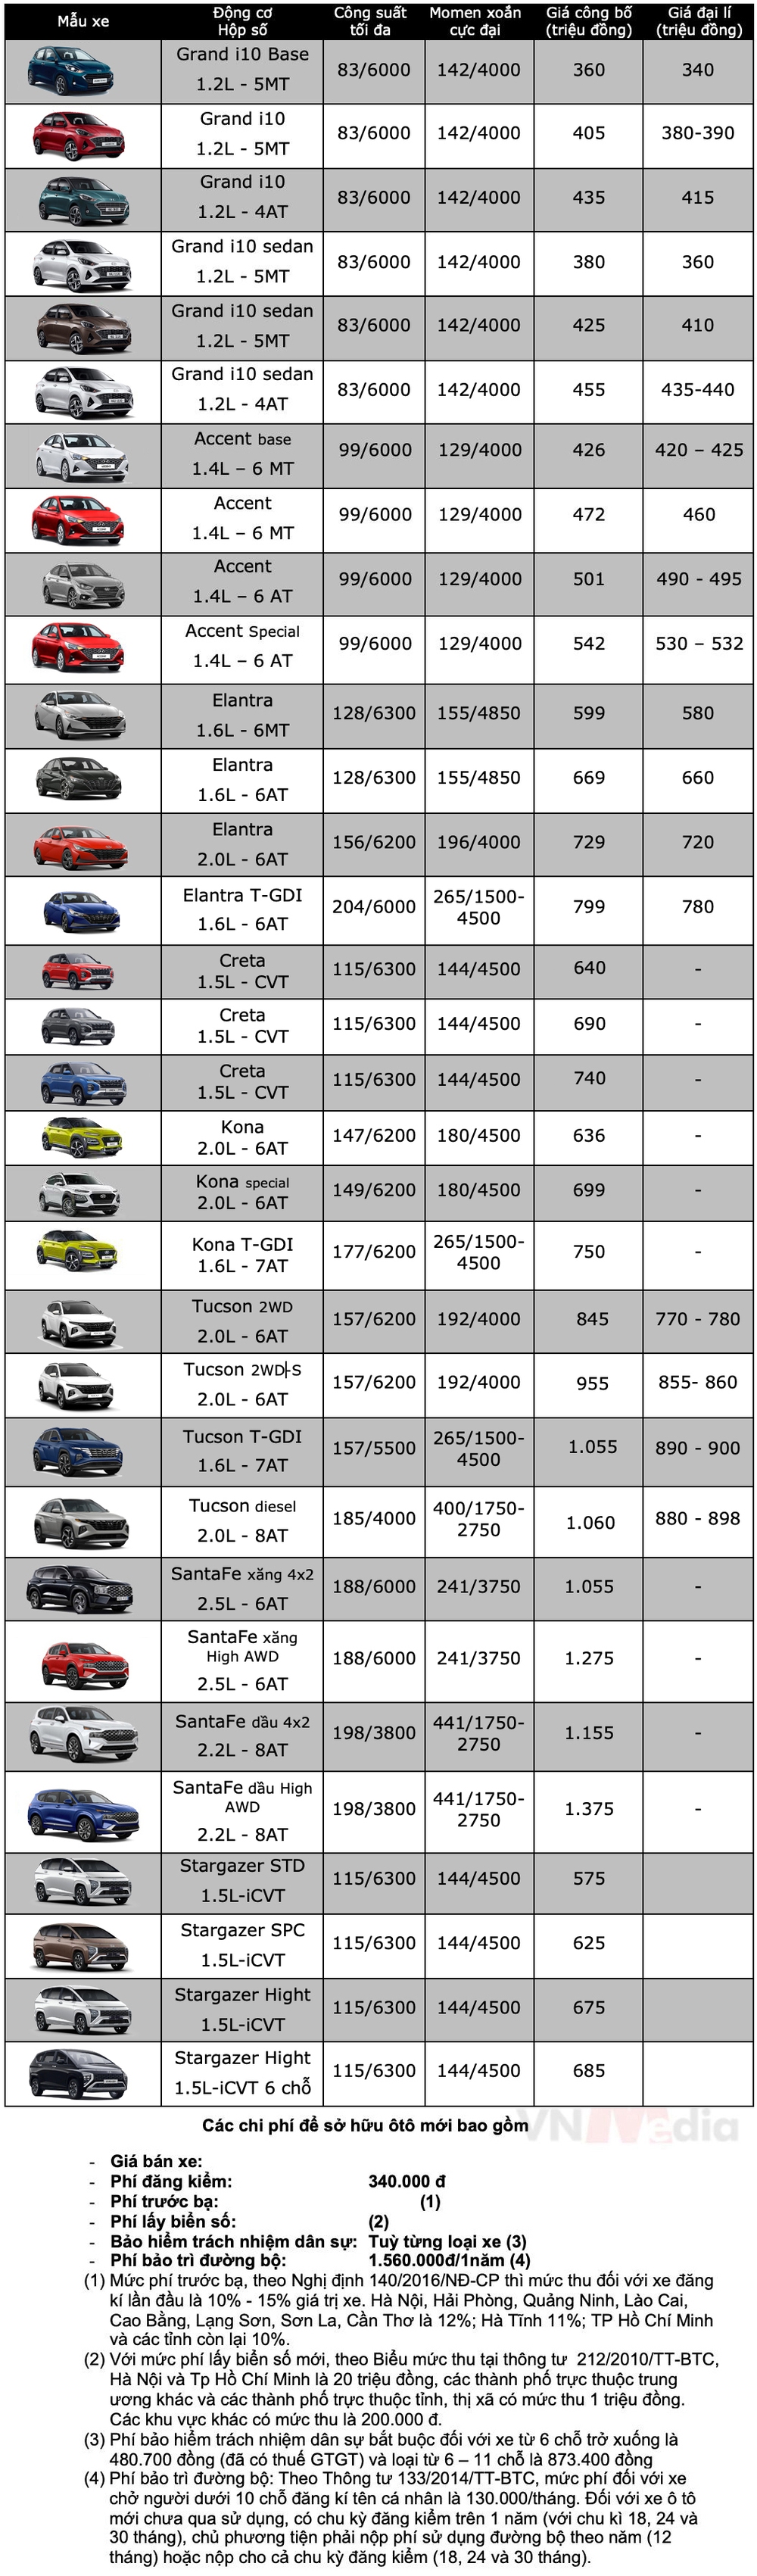 Bảng giá xe Hyundai tháng 1: Hyundai Grand i10 tiếp tục được giảm 25 triệu đồng - Ảnh 2.